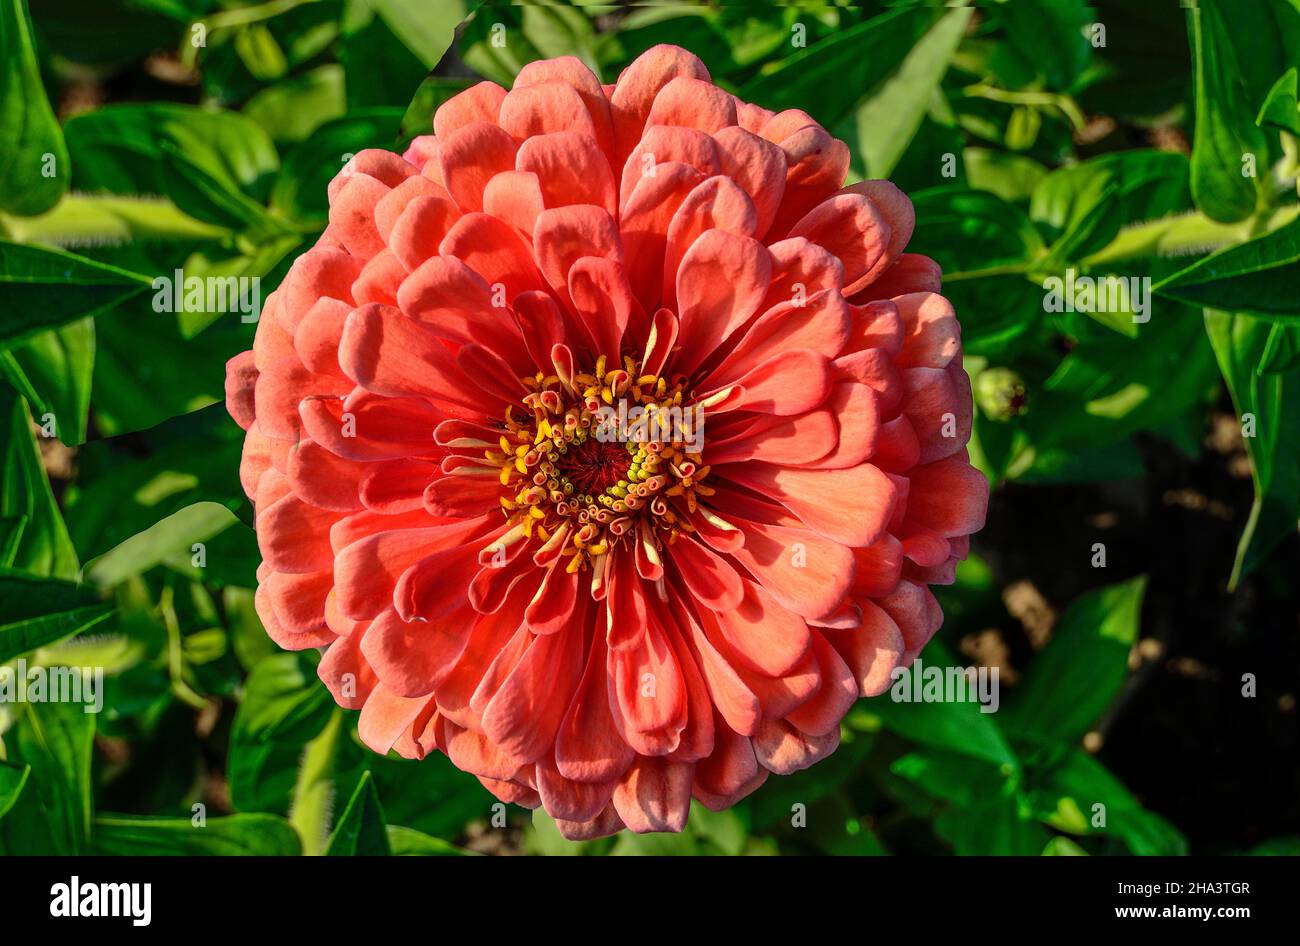 Eine lachsfarbene Zinnia-Blume aus der Nähe auf grünem Blatthintergrund. Zarte rosa flauschige Zinnia - Sommer floralen Hintergrund. Blumenzucht, Landschaftsbau Stockfoto